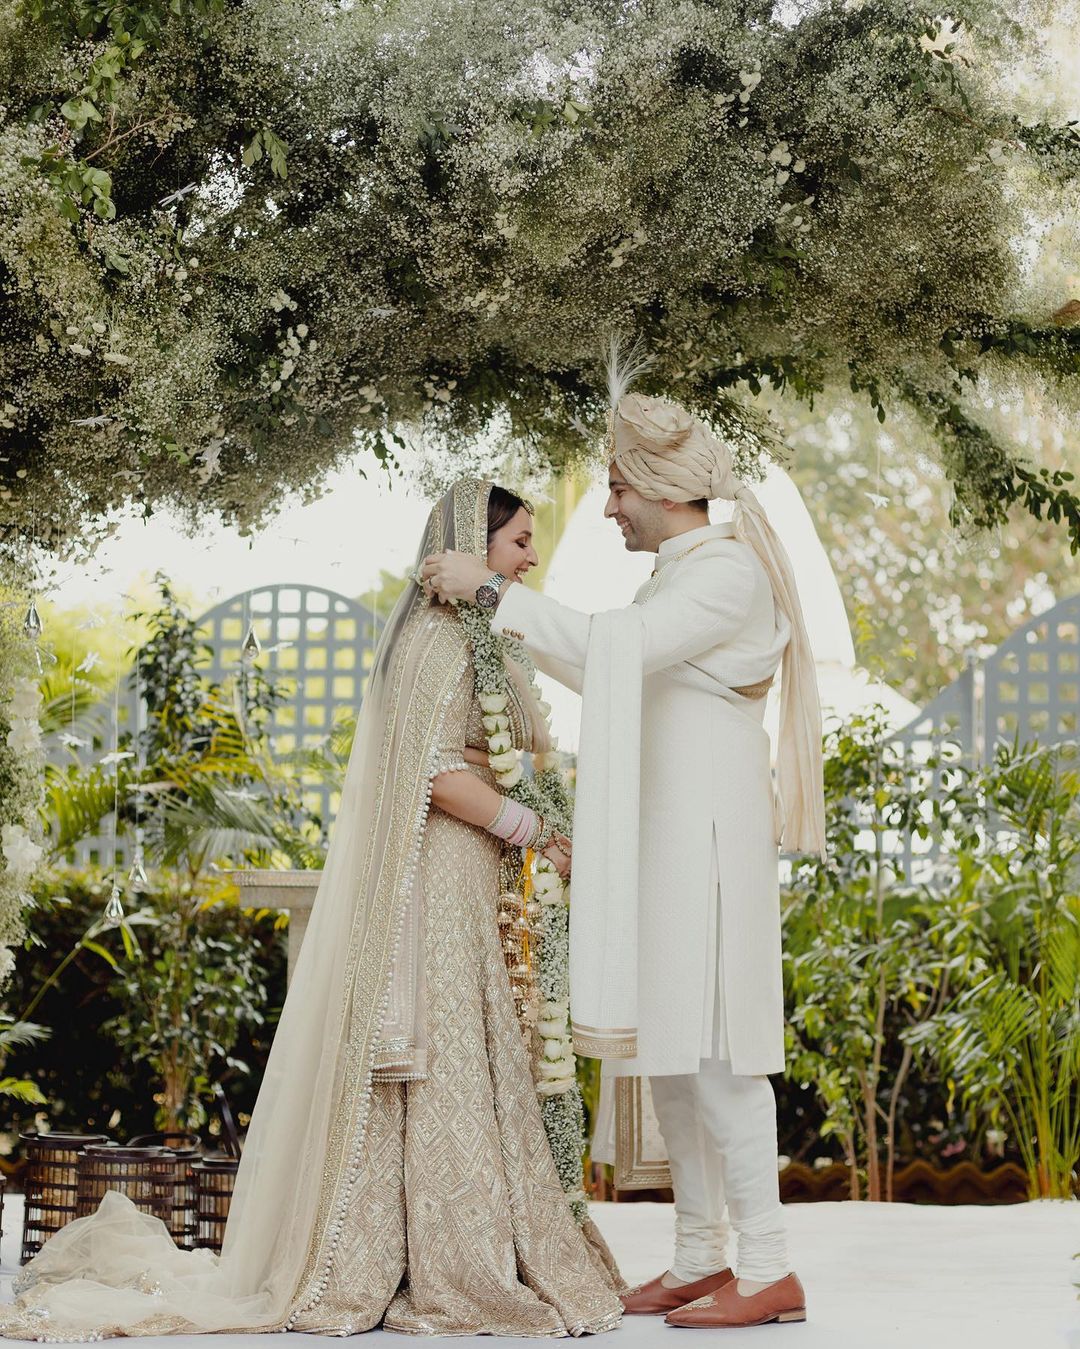 Parineeti-Raghav Wedding First Pic: अपनी शादी में बेहद खूबसूरत दिखे परिणीति चोपड़ा और राघव चड्ढा, वेडिंग की पहली तस्वीरें शेयर कर एक्ट्रेस ने कहा- इस दिन का कब से इंतजार था!